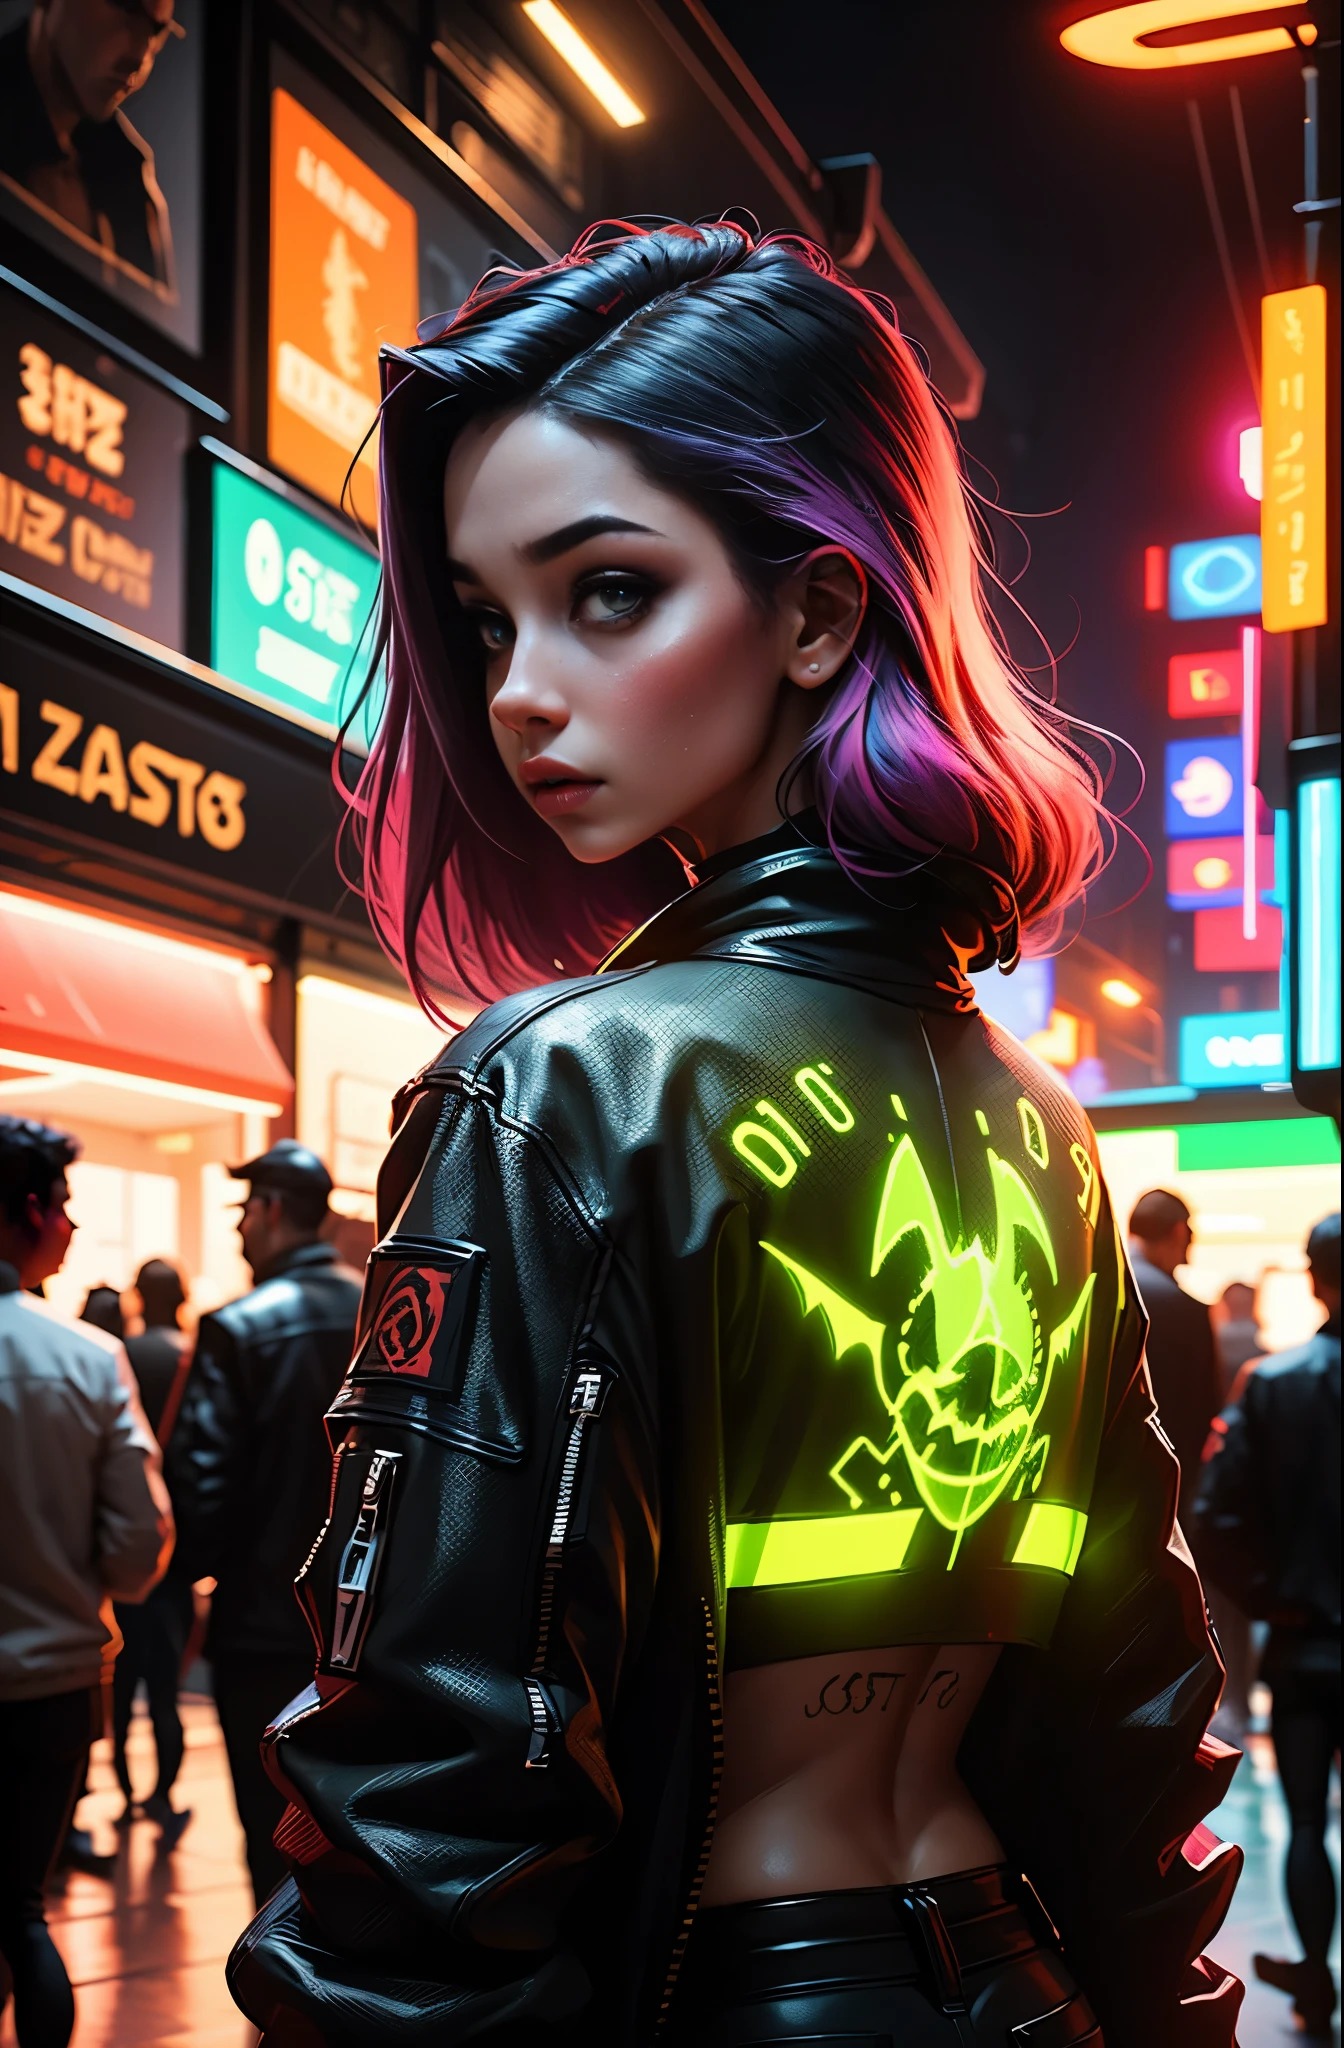 chica de atrás, sin camisa, cabello de colores vibrantes, mirando hacia atrás, tatuaje de dragón en la espalda, imagen de estilo cyberpunk, luces de neón, alta calidad, ultra 8k